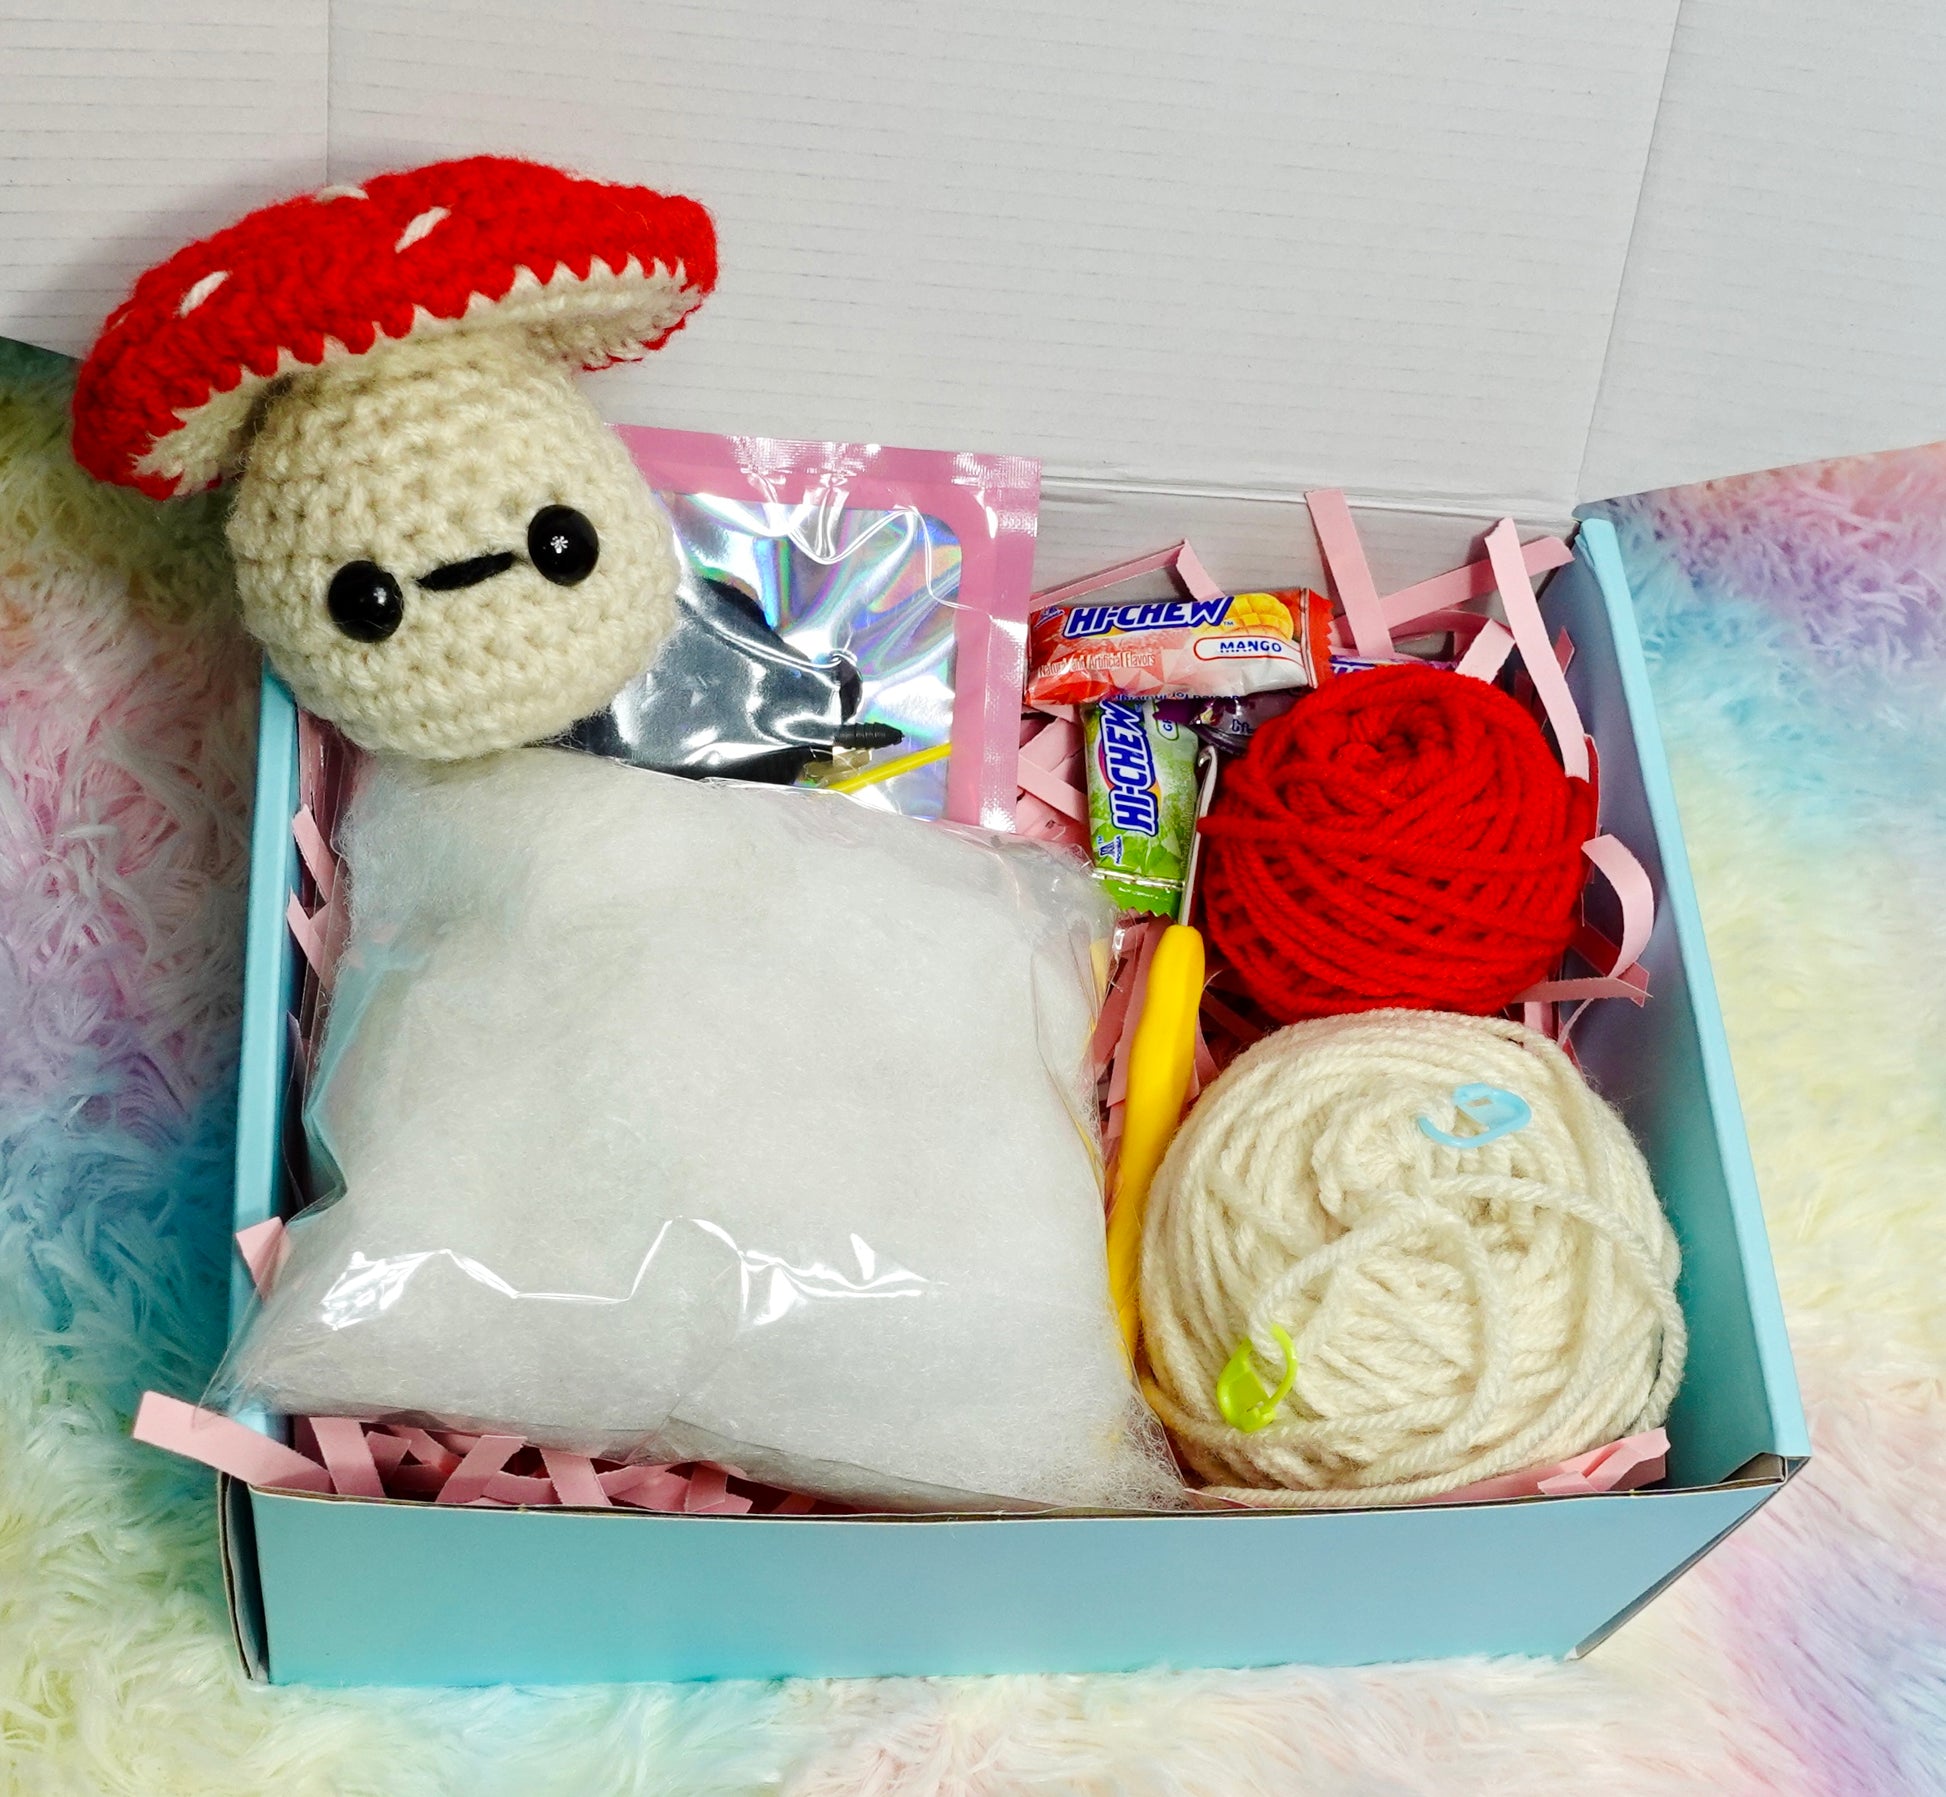  Crochet Kit for Beginners Mushroom Crochet Kit for